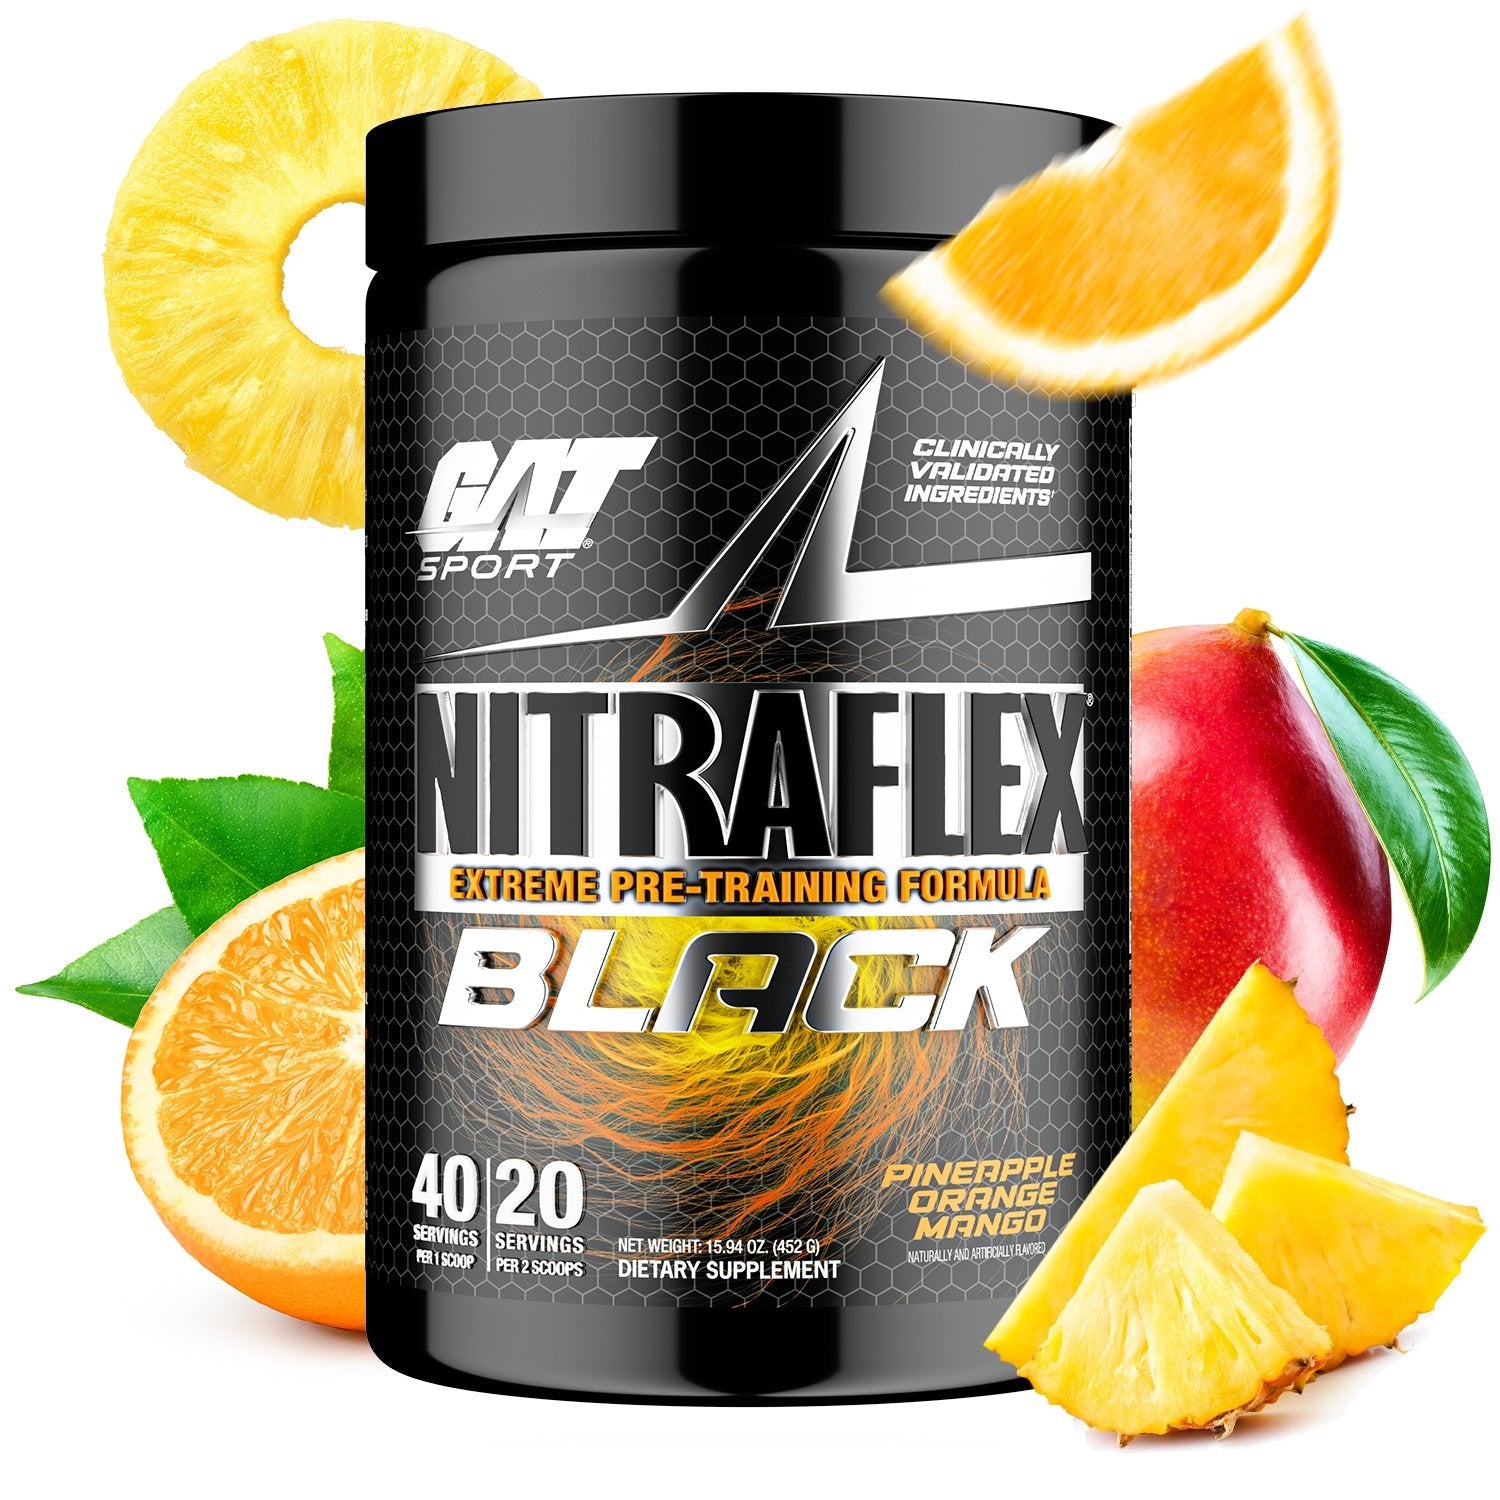 Reclamación acre Concentración NITRAFLEX BLACK Extreme Pre-Training Formula – GAT SPORT